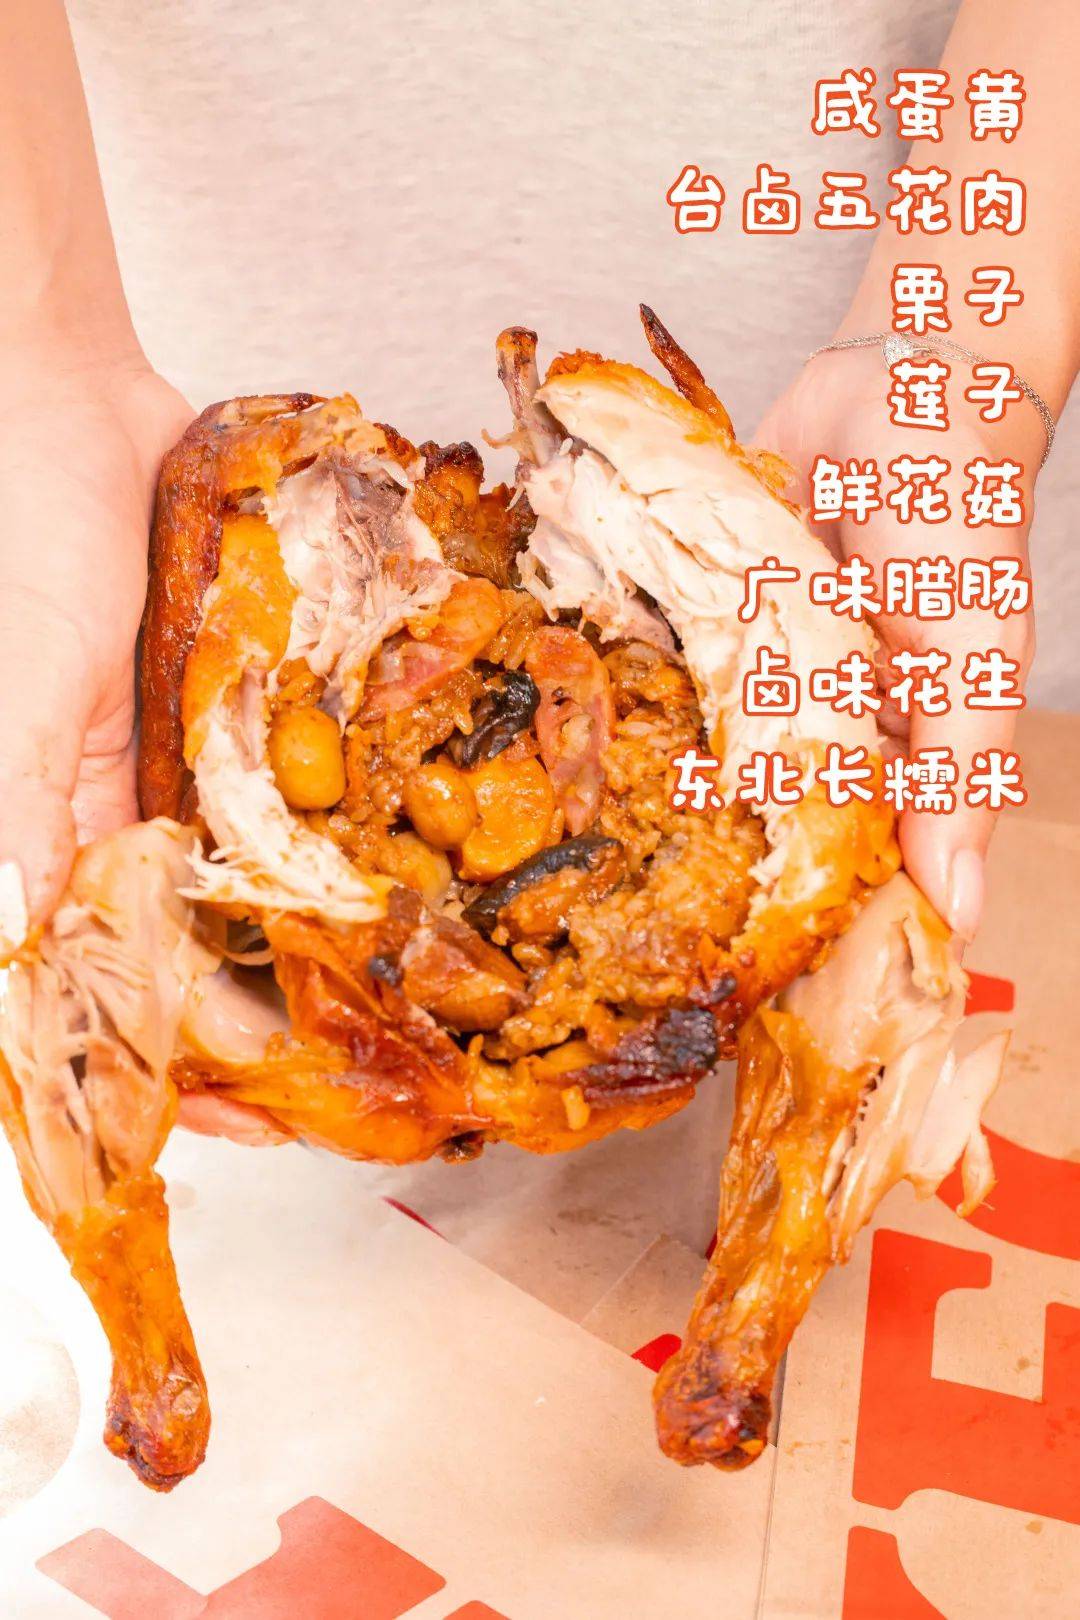 厨苑食谱: 八宝莲子鸡(Eight Treasure Chicken)